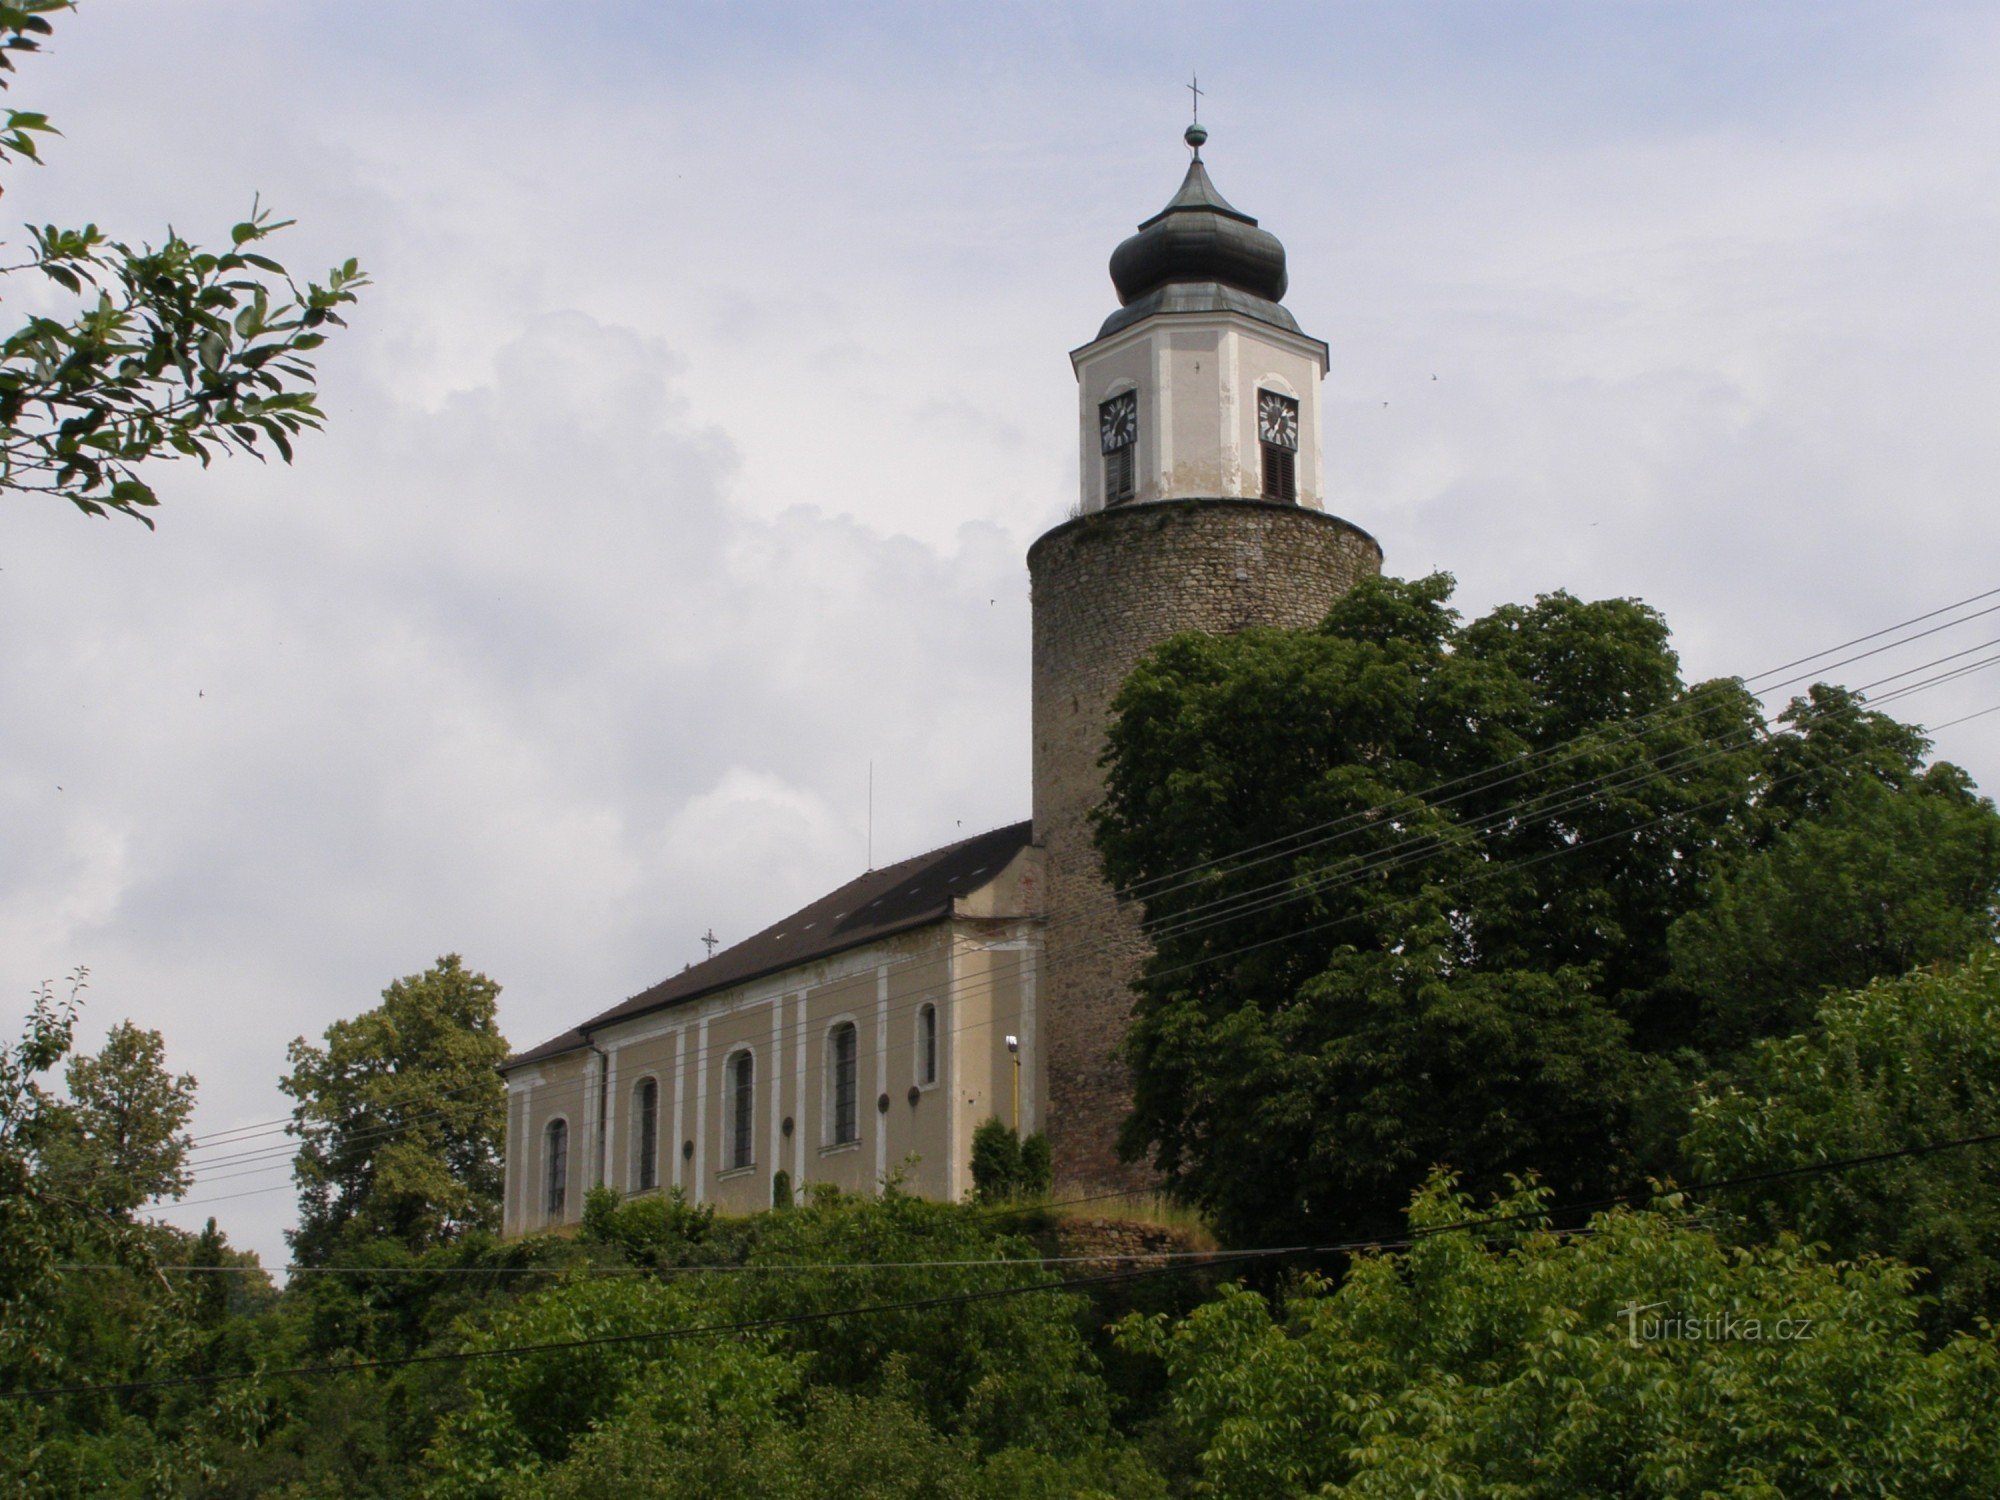 Žulová - Szt. József a vár tornyával